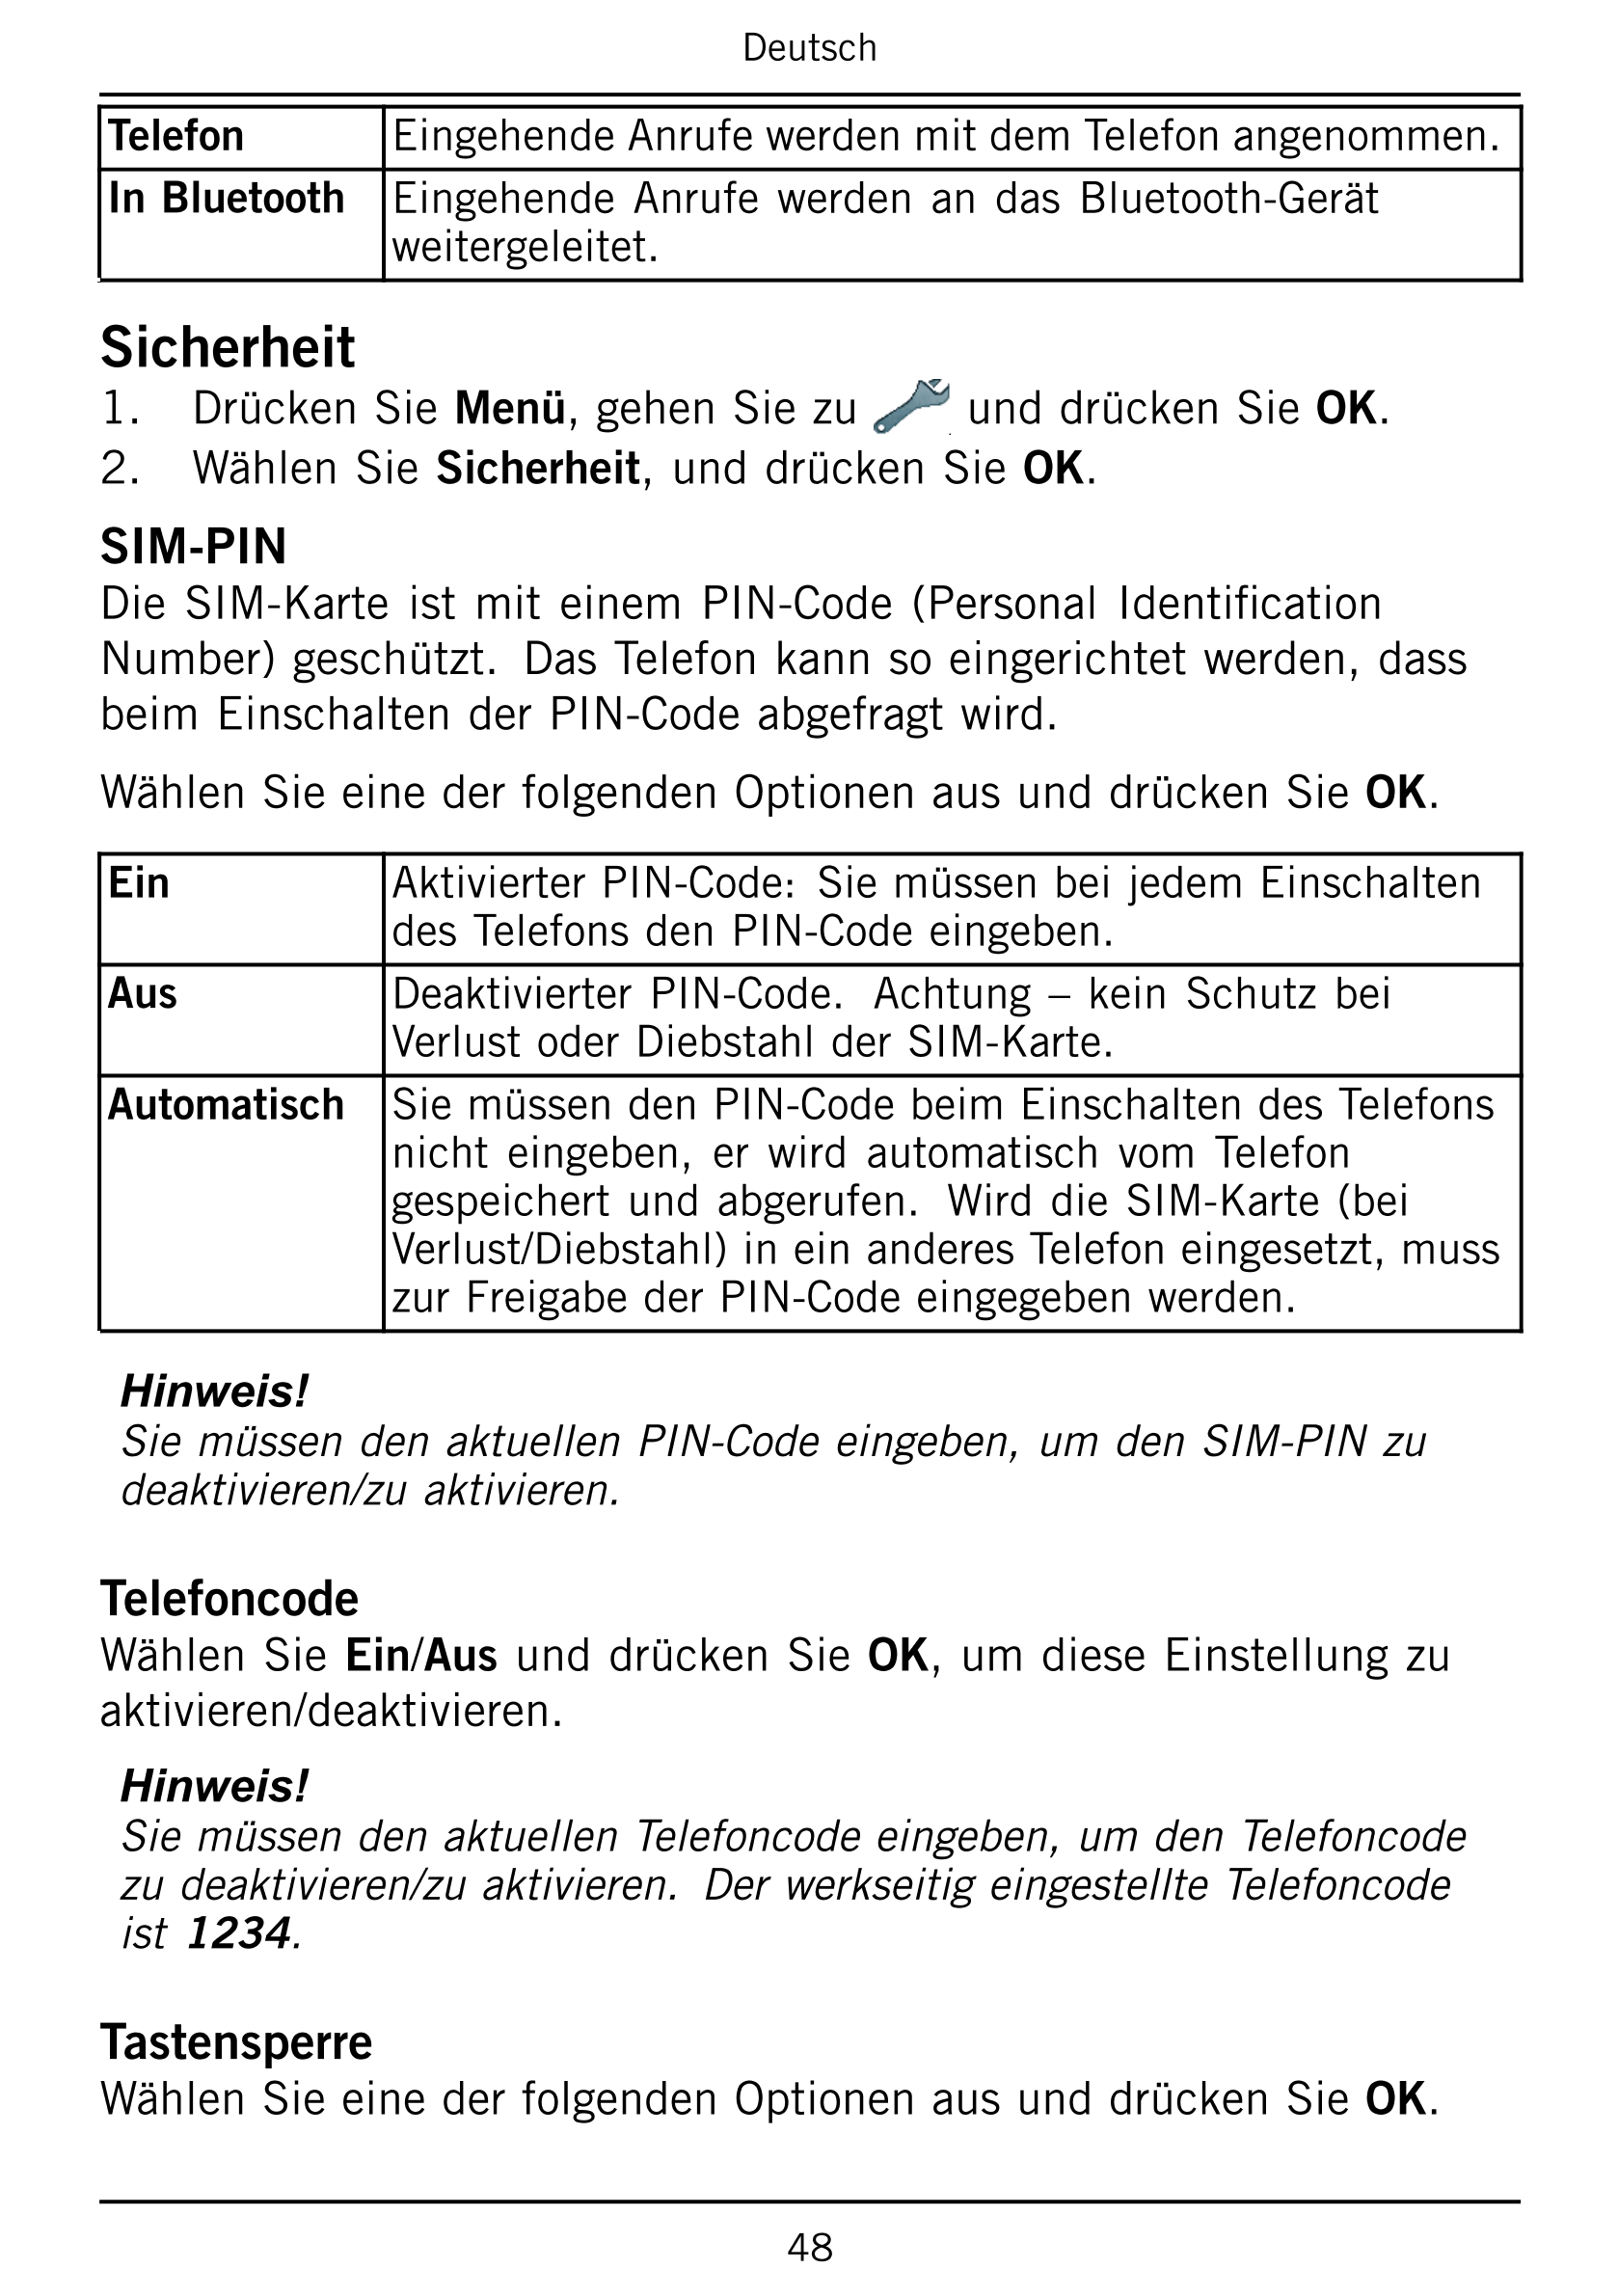 Deutsch
Telefon Eingehende Anrufe werden mit dem Telefon angenommen.
In Bluetooth Eingehende  Anrufe  werden  an  das  Bluetooth